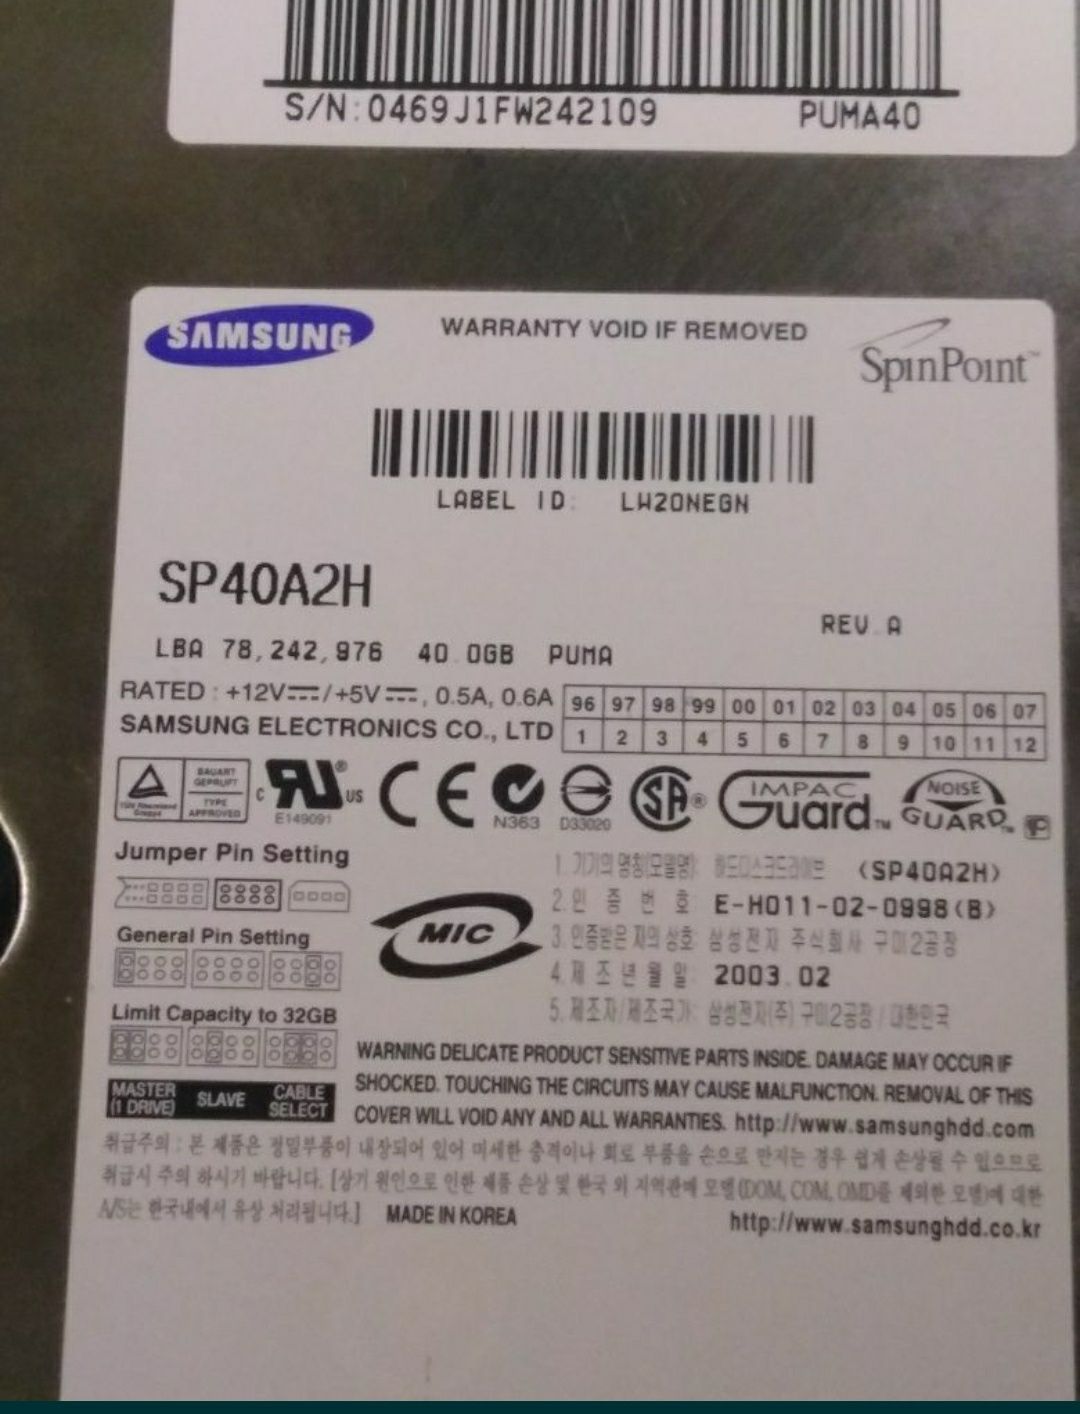 HDD SAMSUNG 40Gb SP40A2H
Жёсткий диск Samsung,снят очень окуратно ,скл